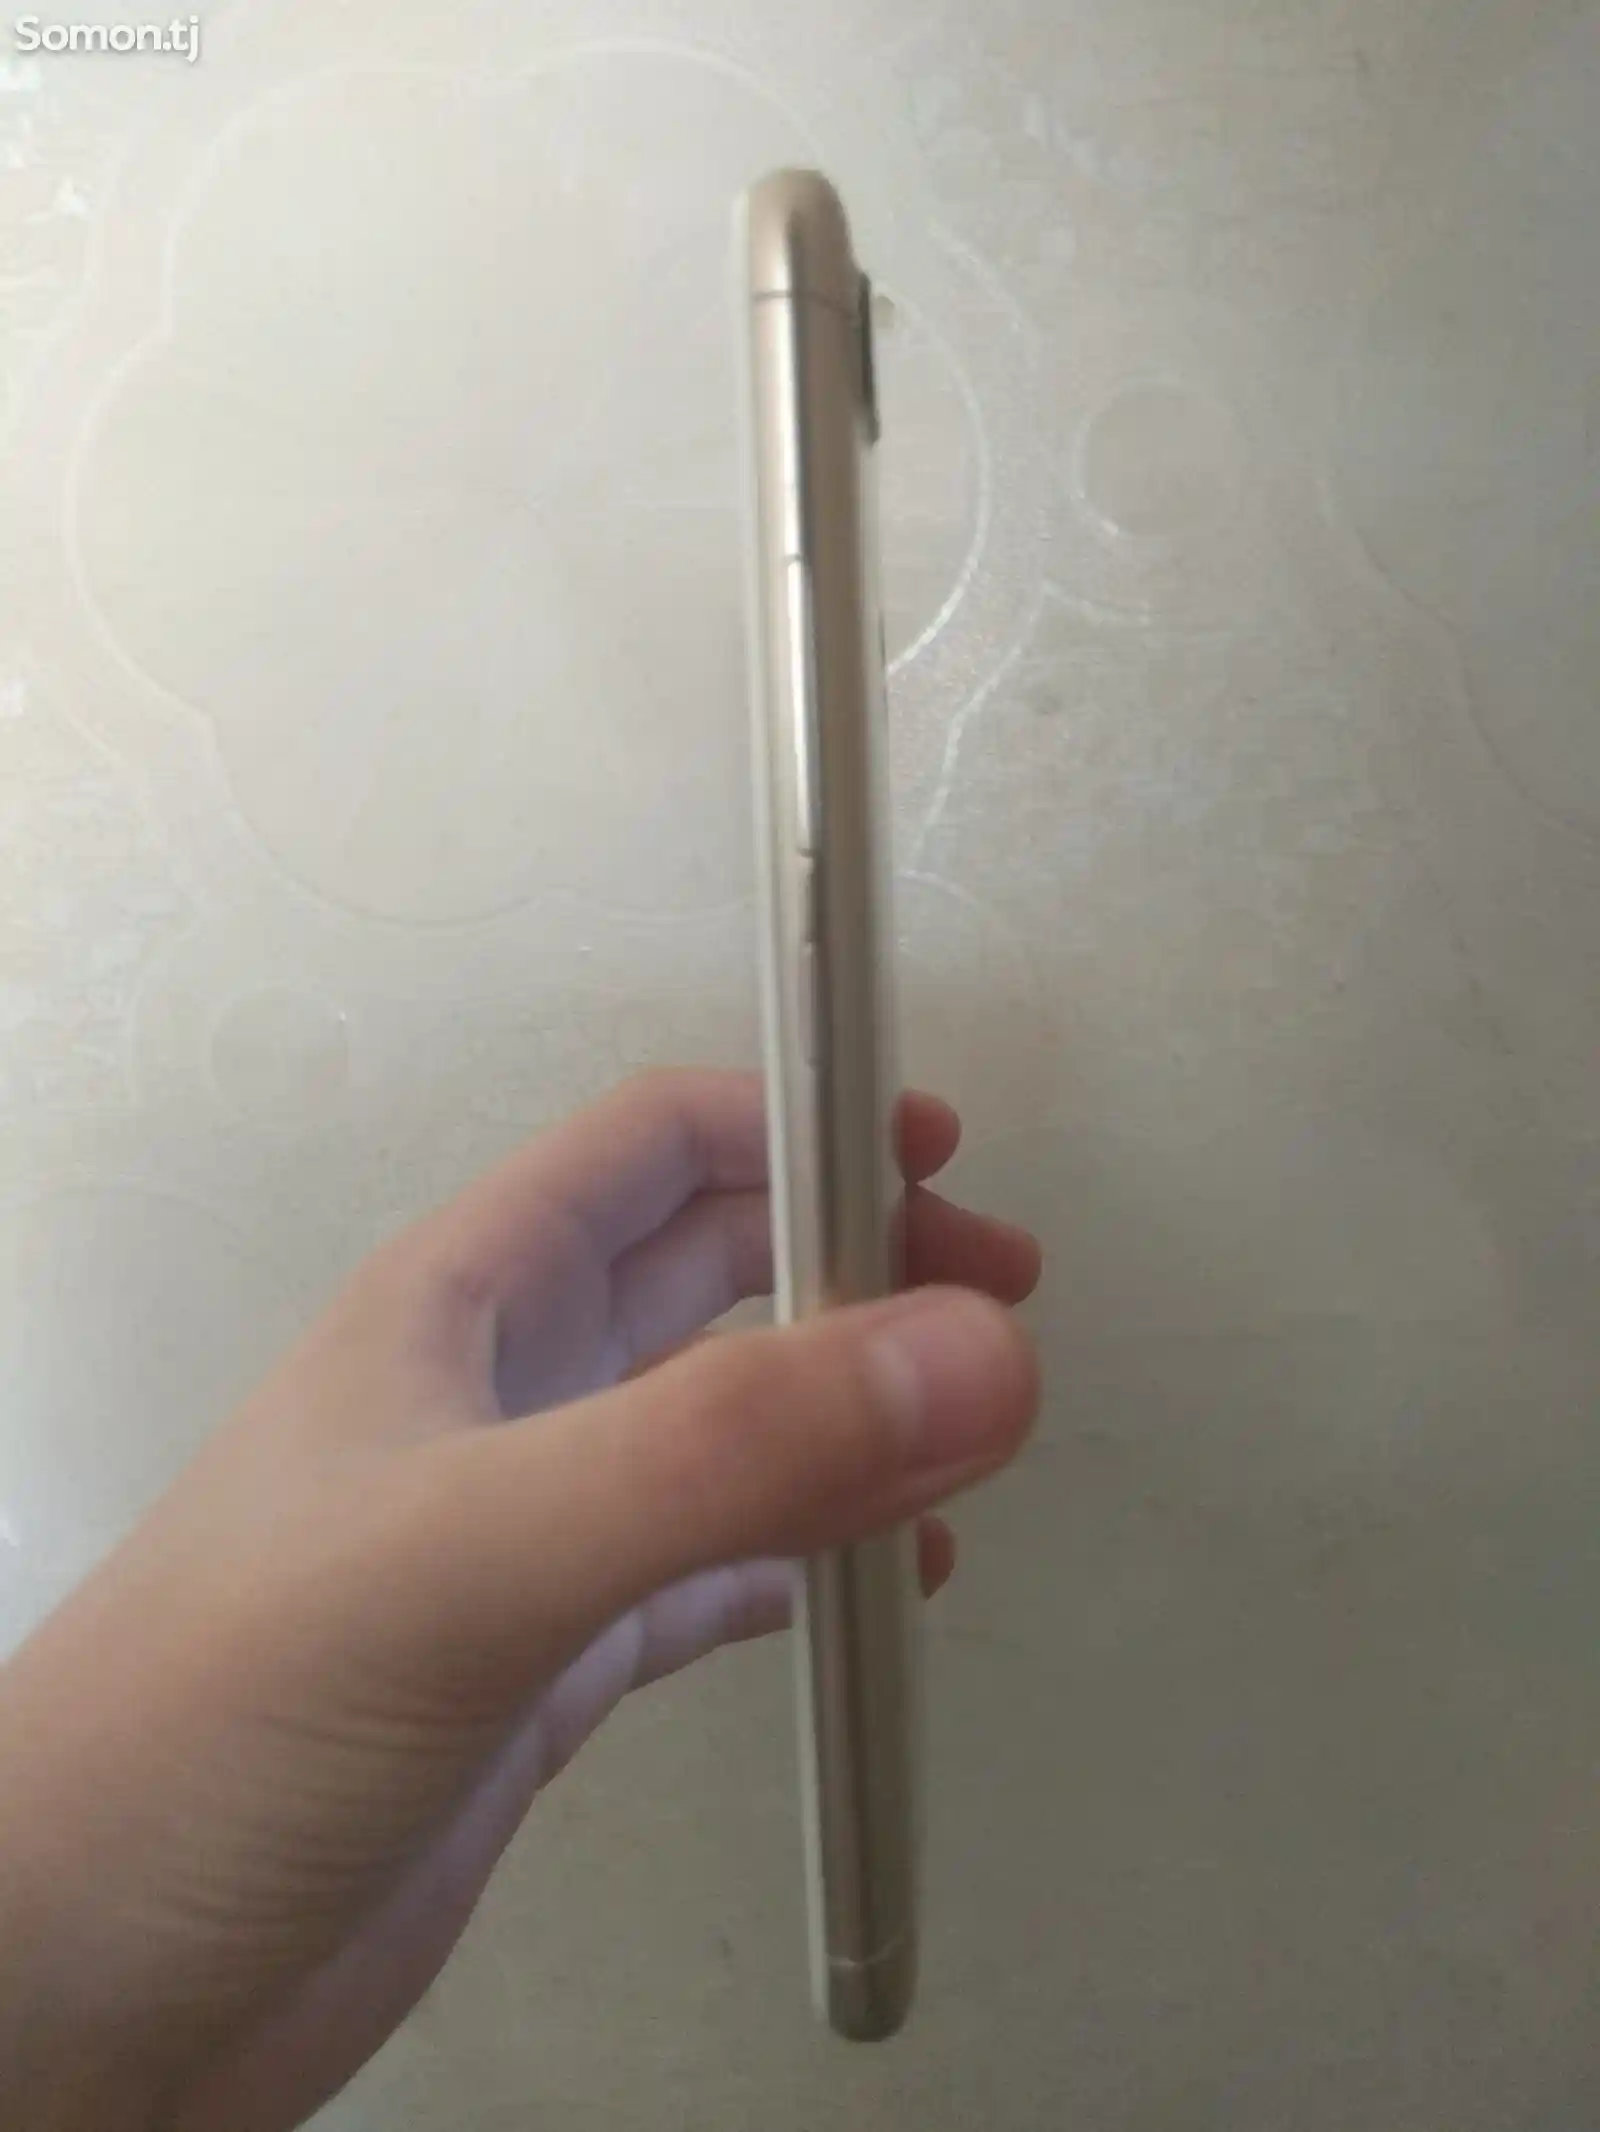 Xiaomi Redmi 6-3